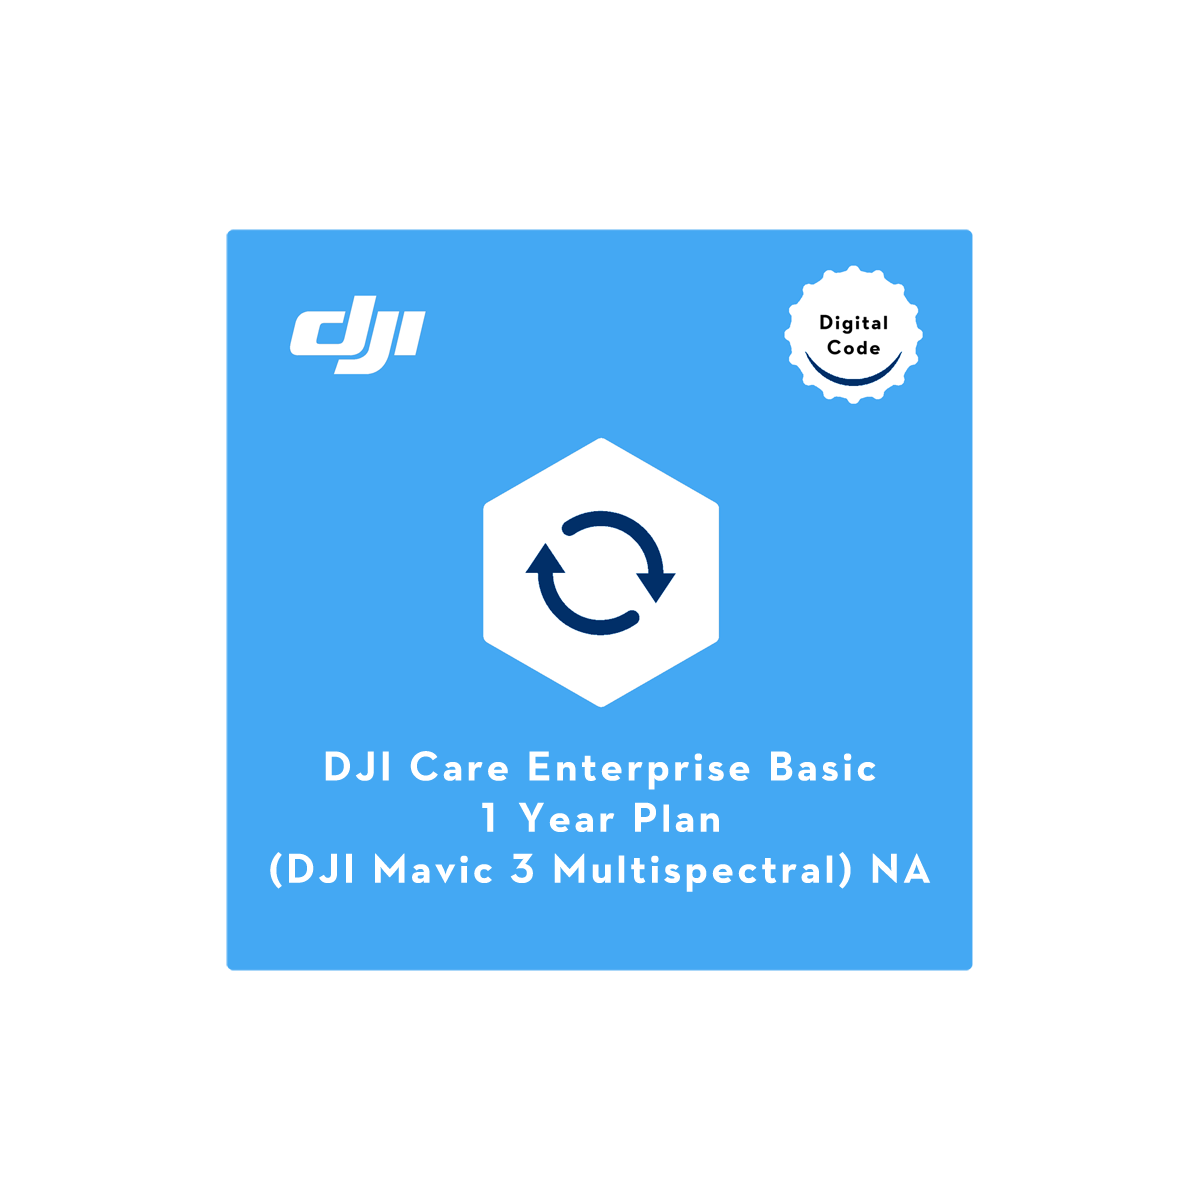 DJI Care Enterprise Basic (Mavic 3 Multispectral) NA